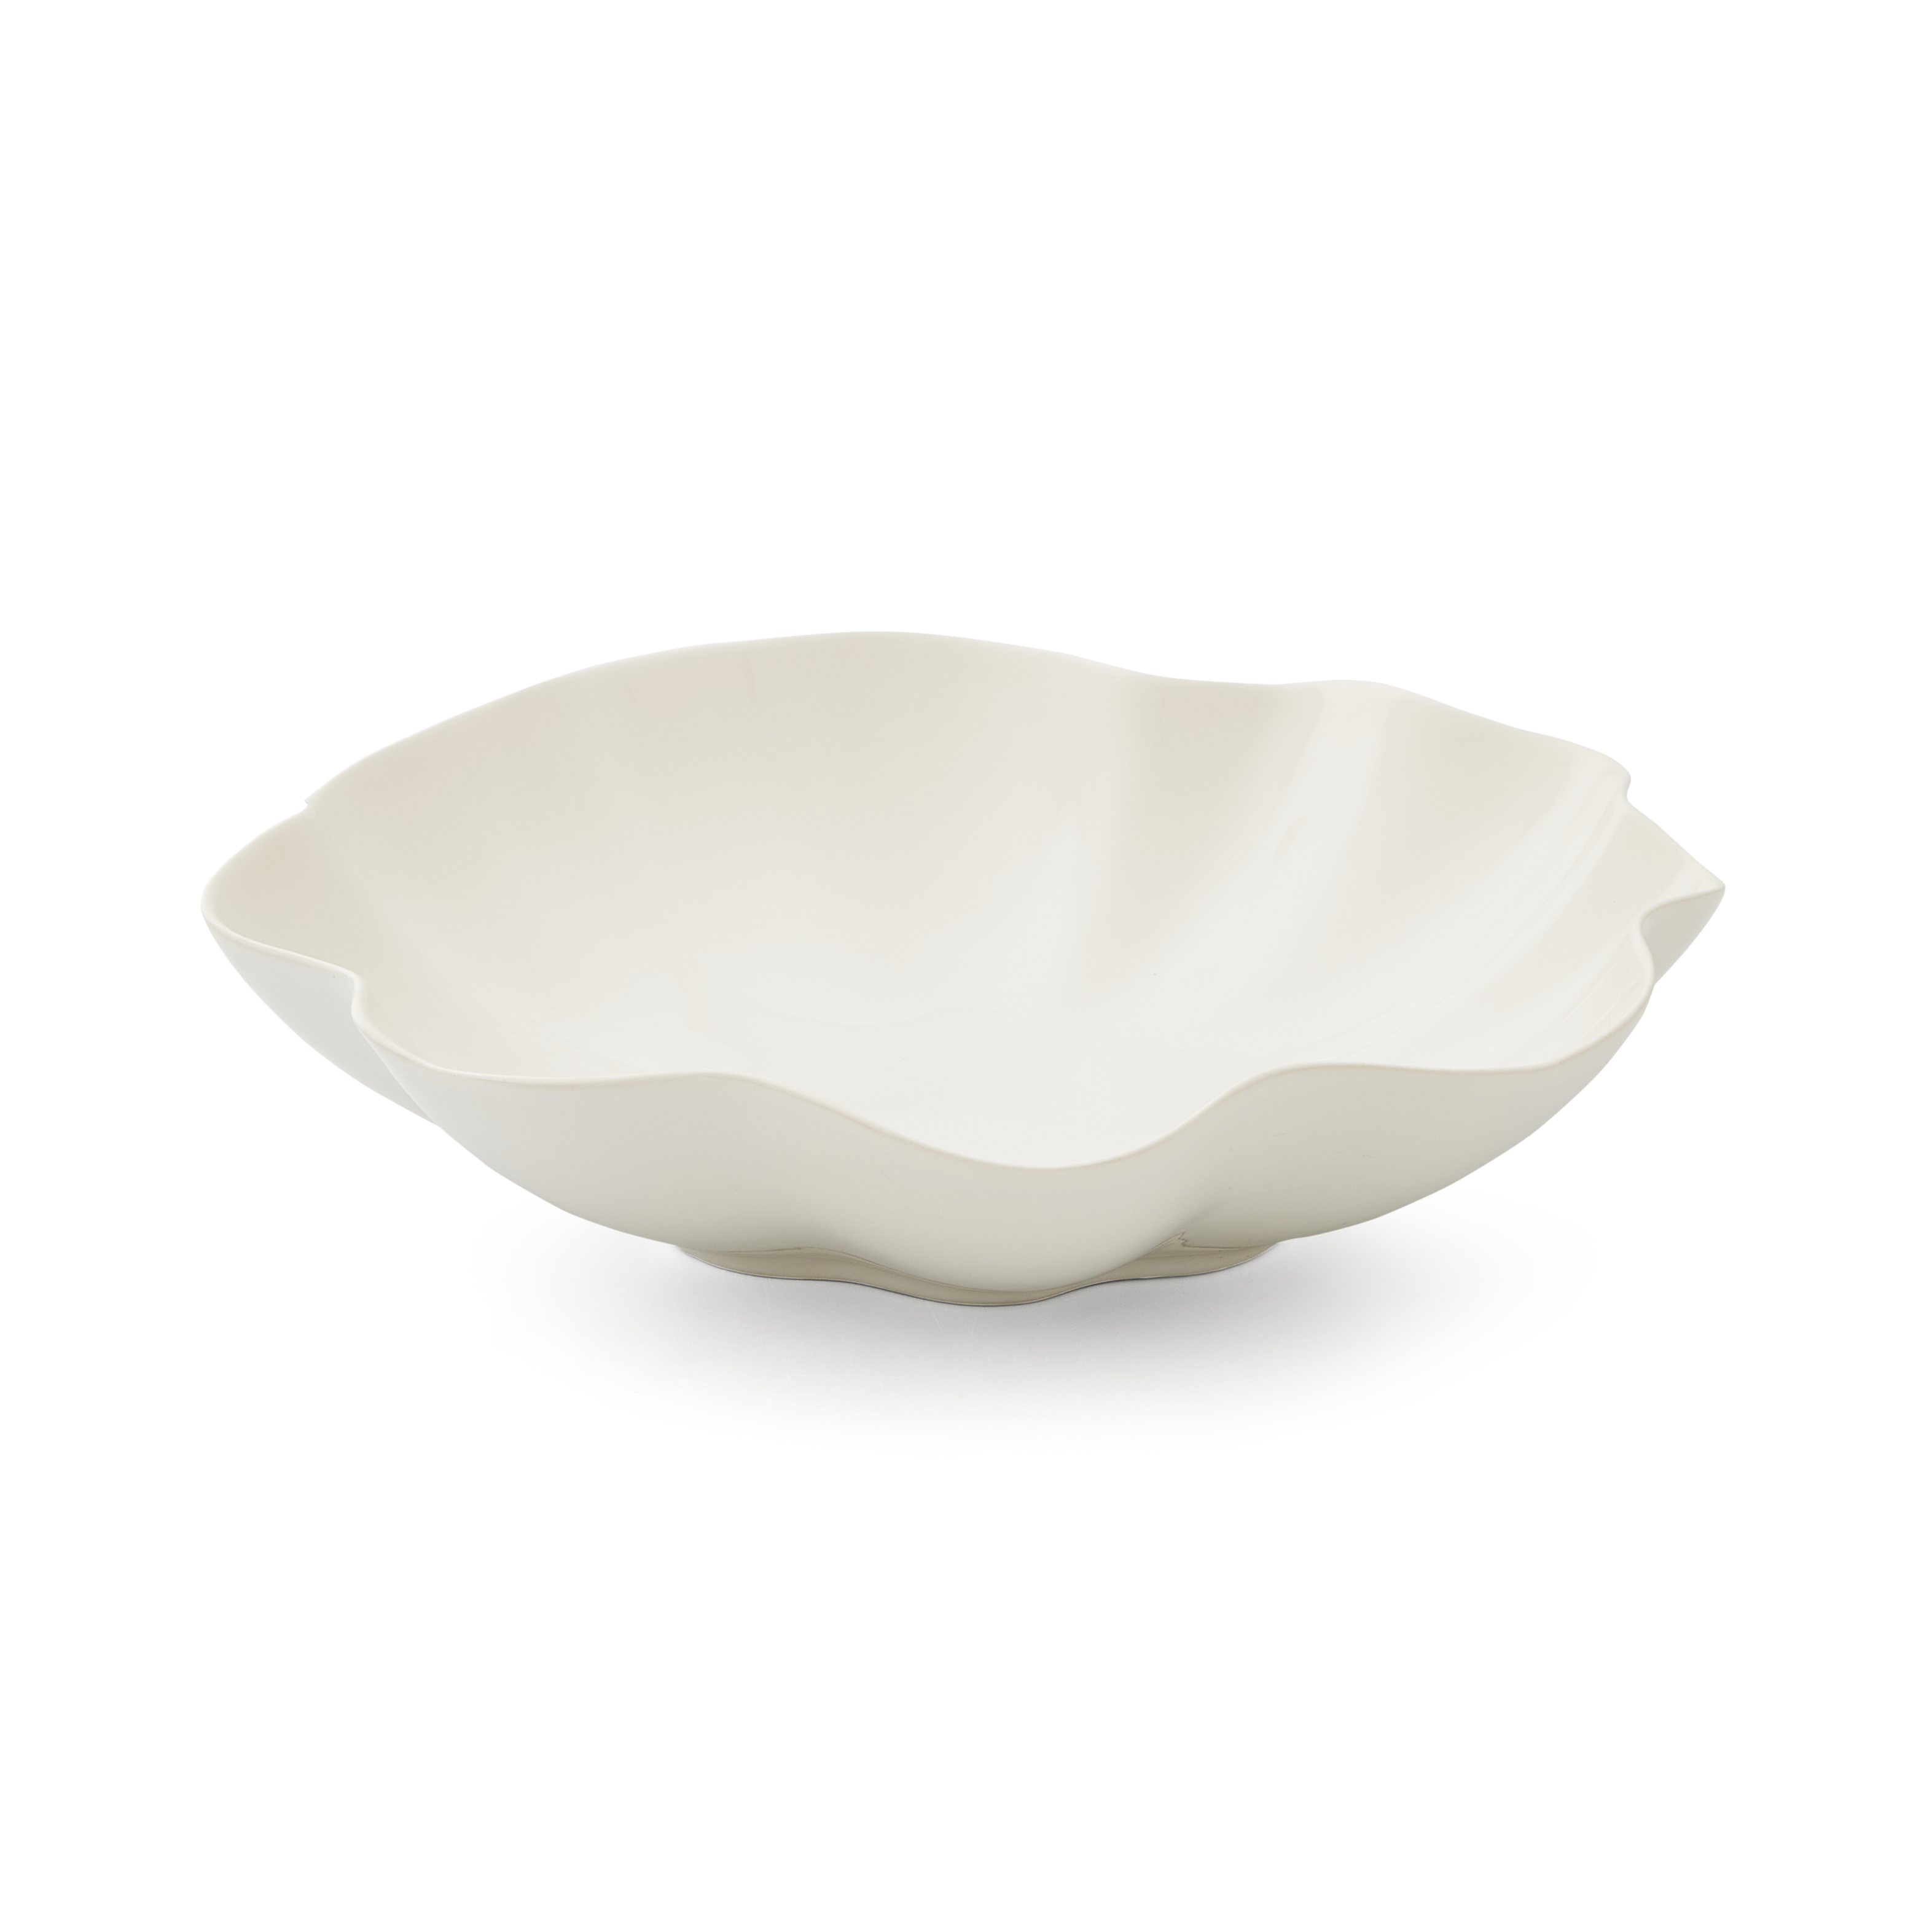 Sophie Conran Floret Large Serving Bowl,Cream image number null